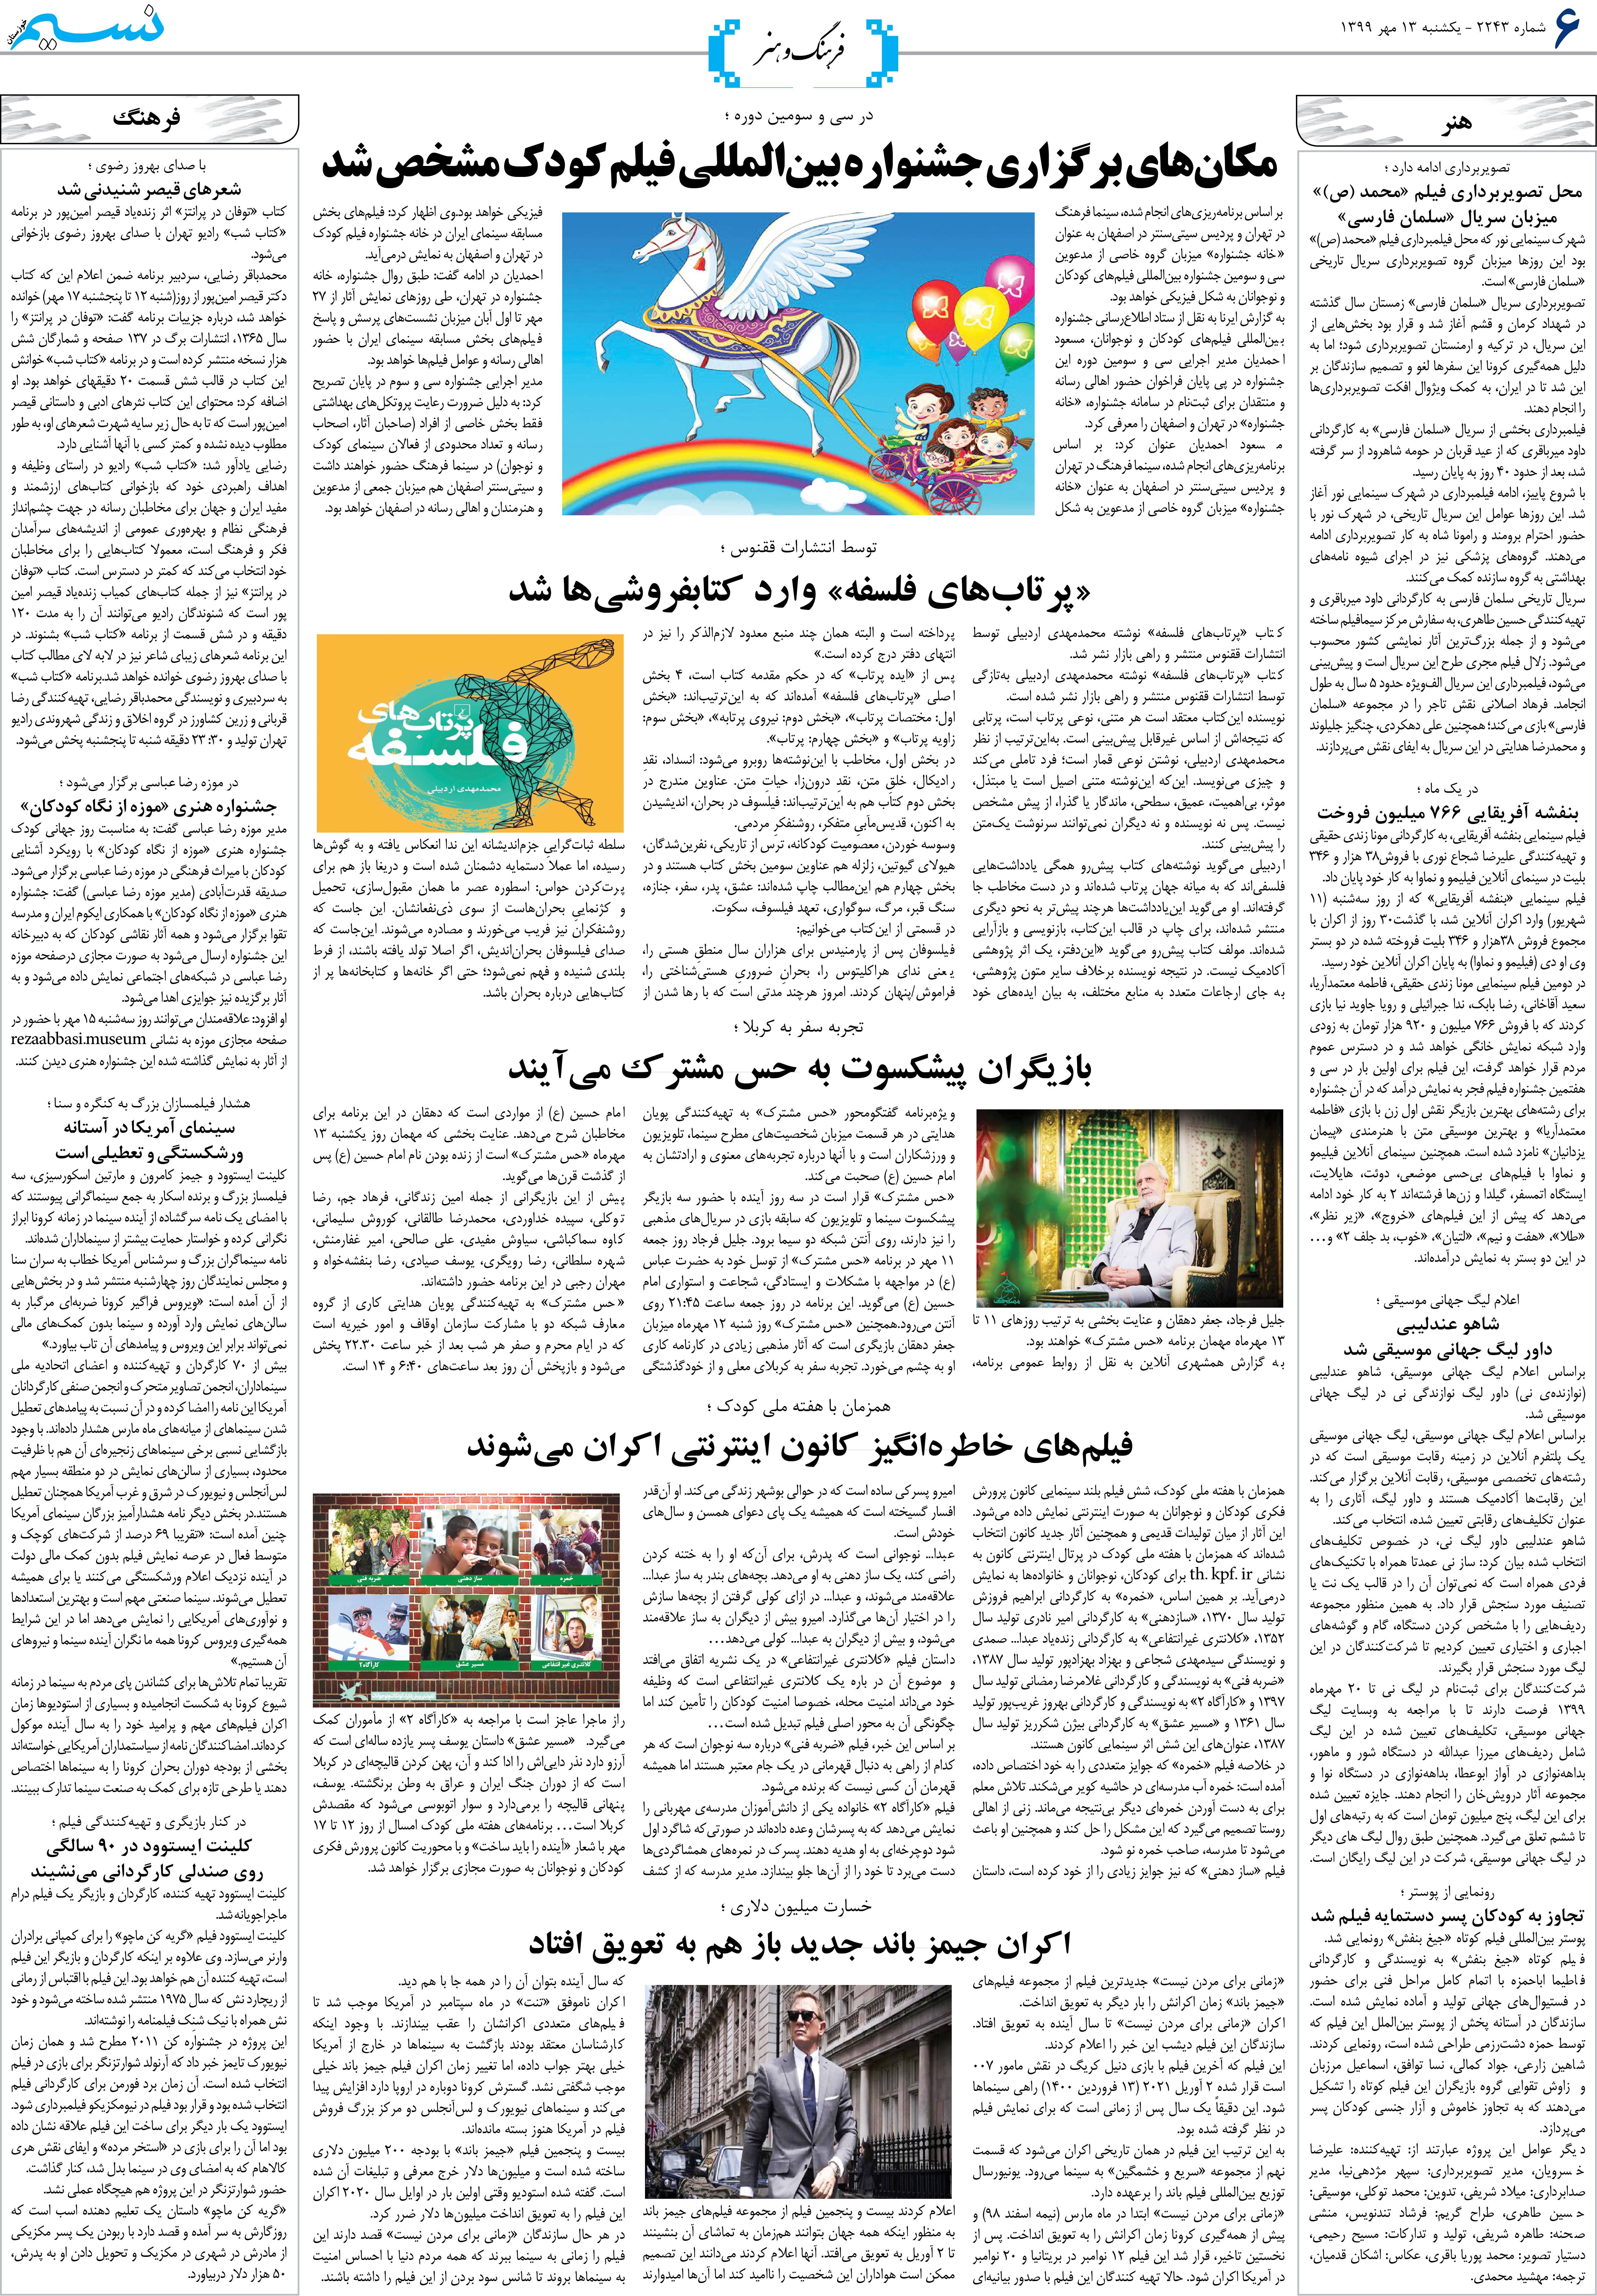 صفحه فرهنگ و هنر روزنامه نسیم شماره 2243